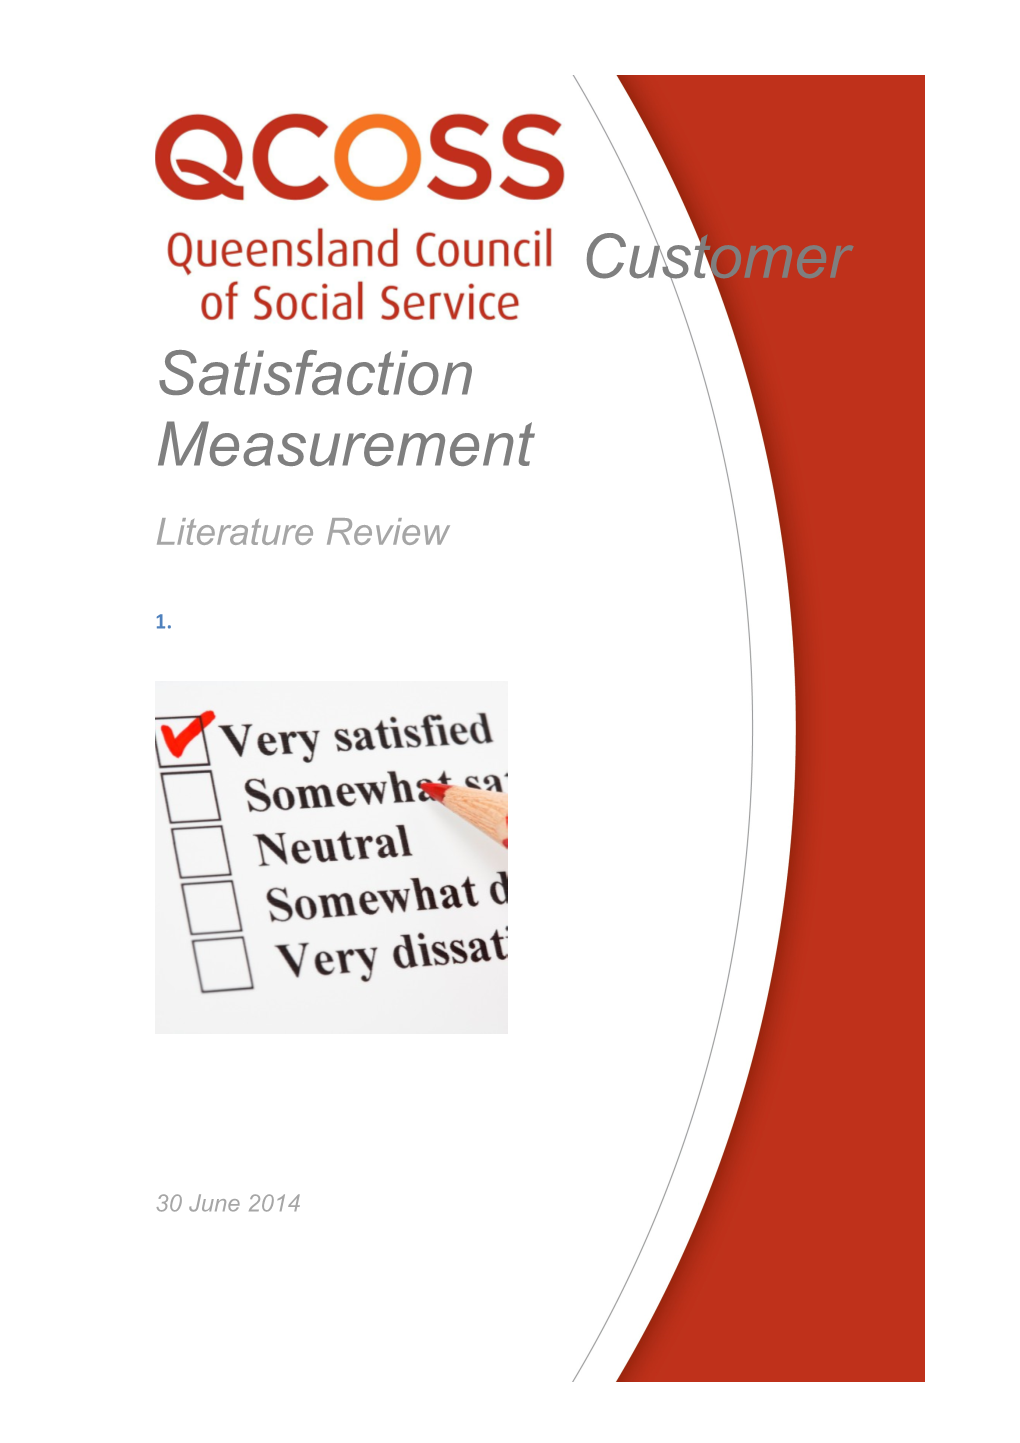 Customer Satisfaction Measurement